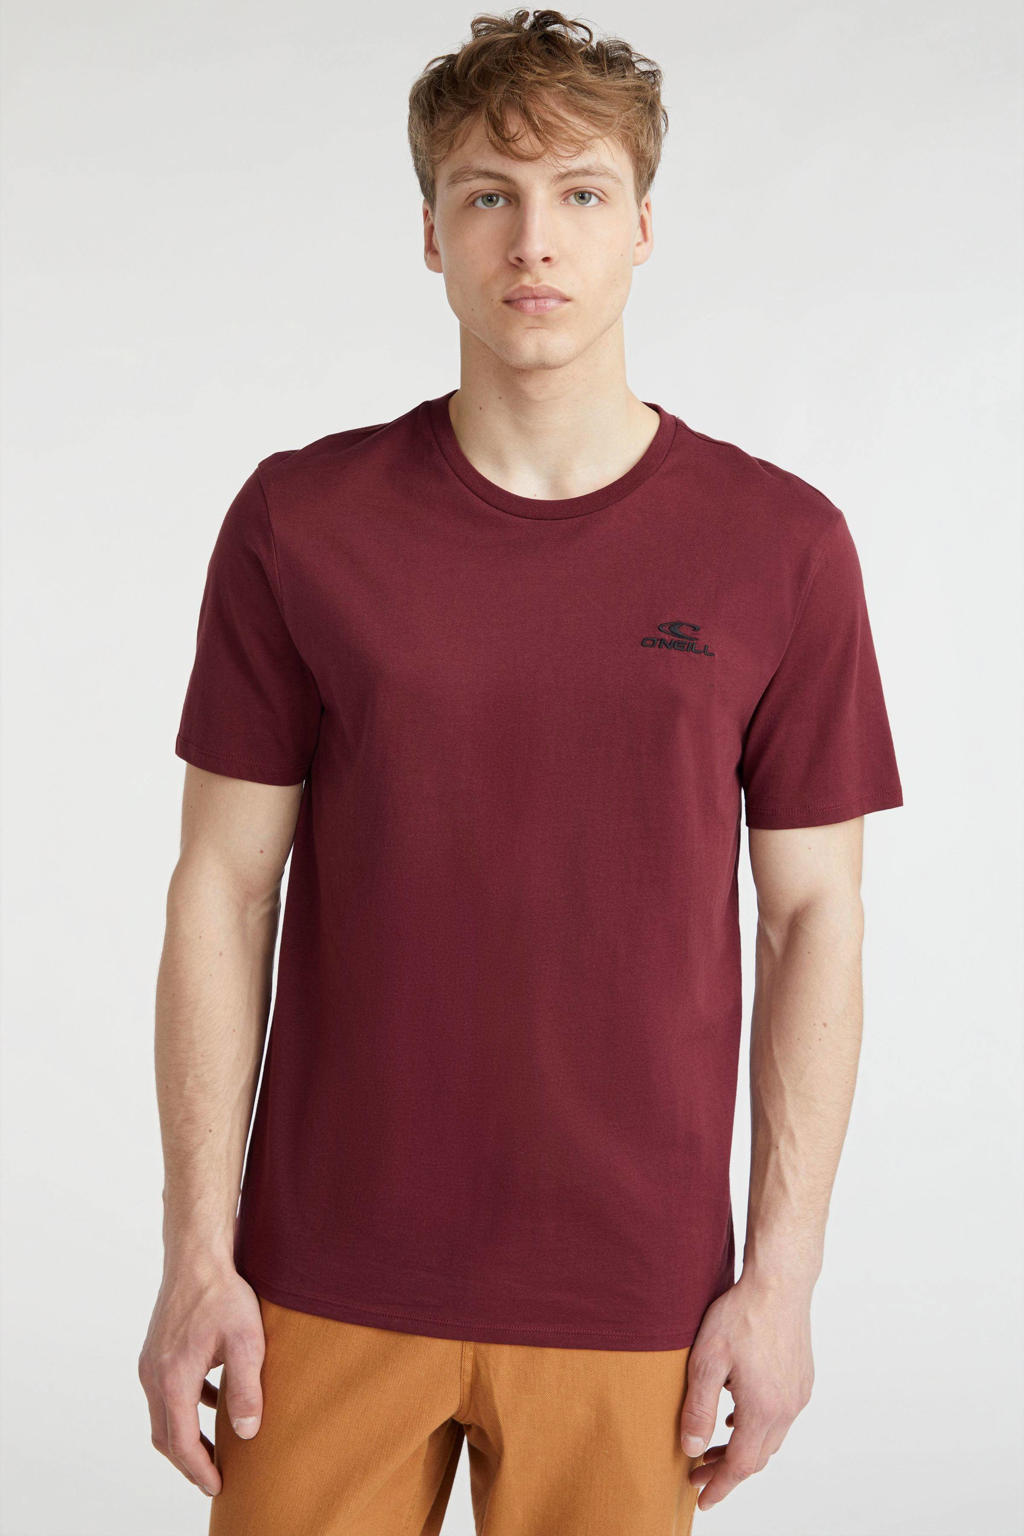 Rode heren O'Neill regular fit T-shirt van katoen met logo dessin, korte mouwen en ronde hals